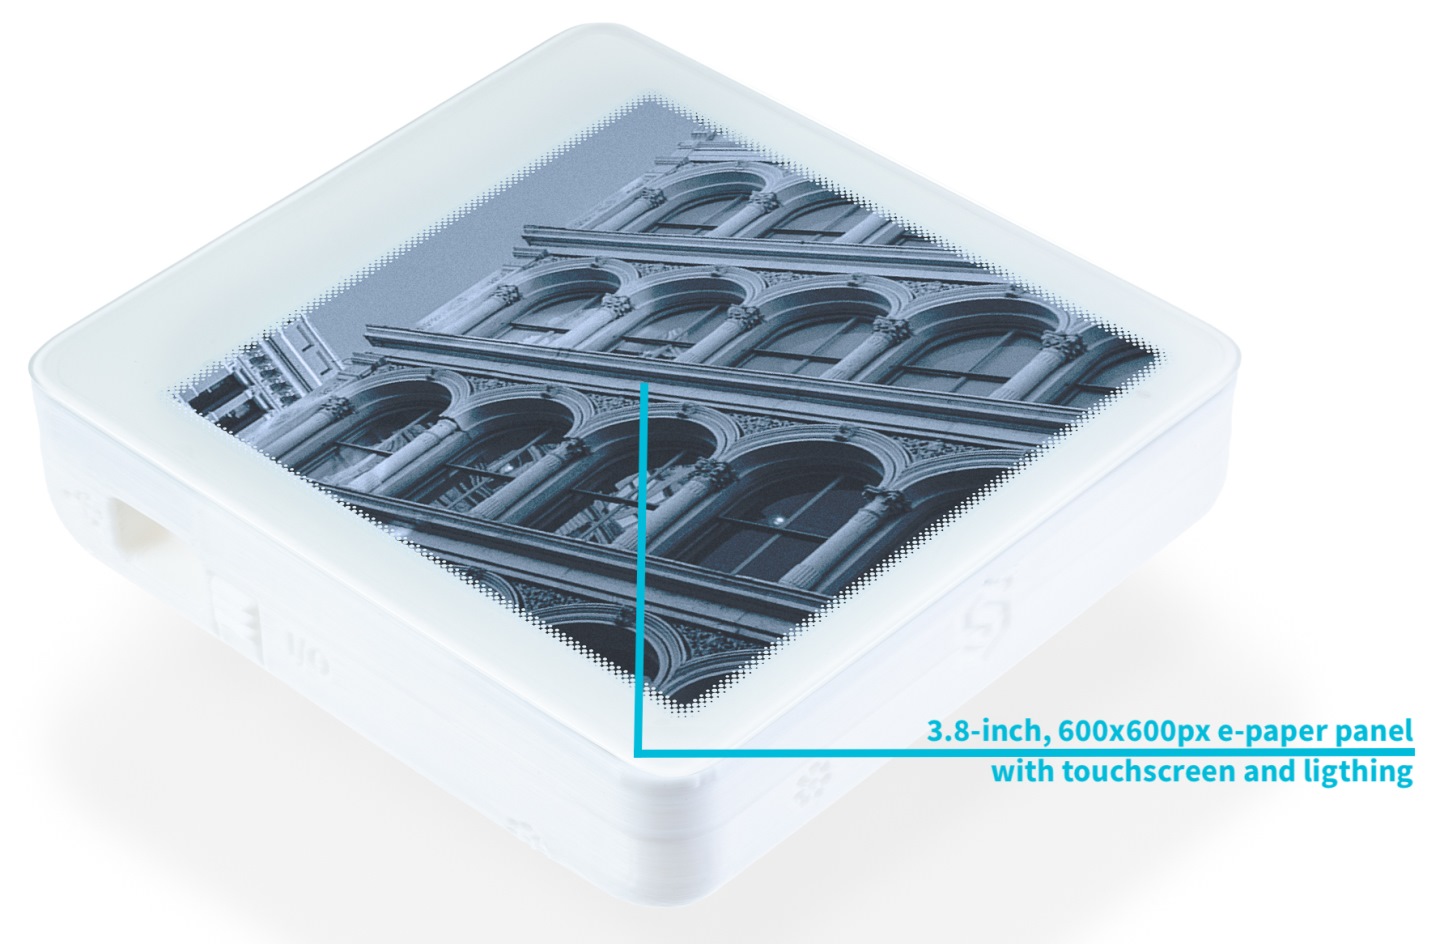 Inkplate 4 TEMPERA是載3.8吋電紙顯示器的開發套件。